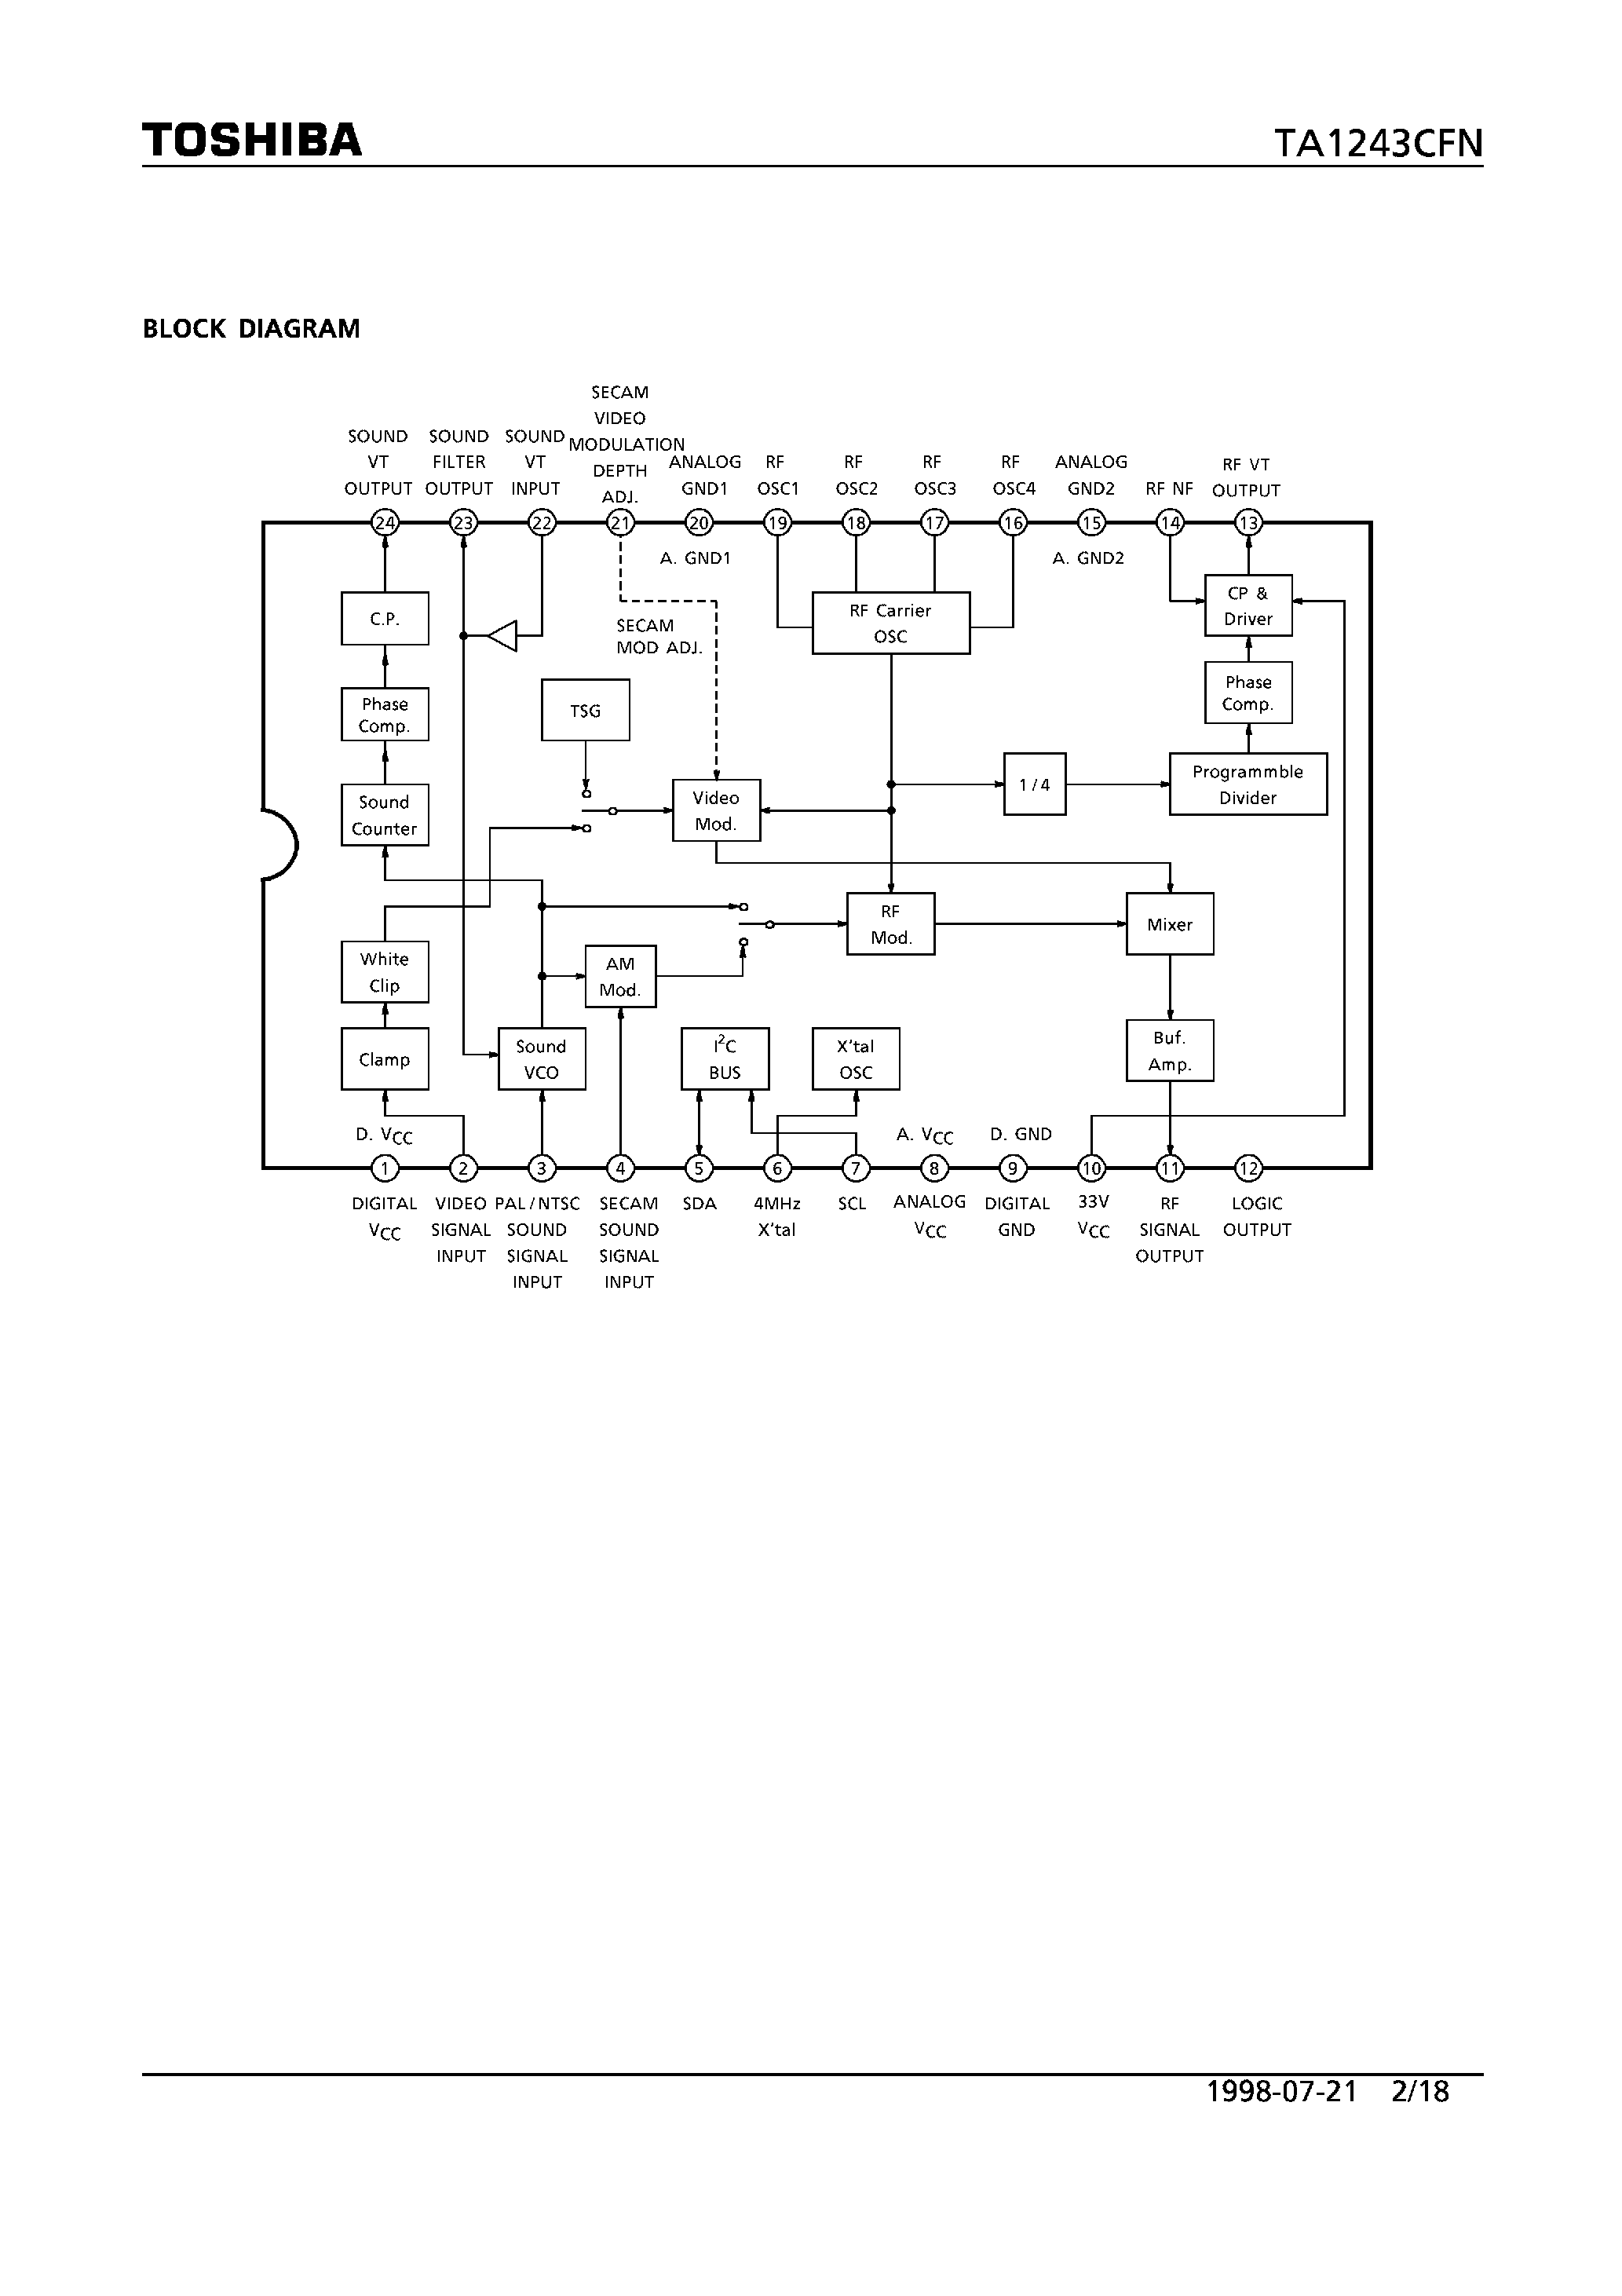 Datasheet TA1243CFN - RF MODULATOR FOR VCR page 2